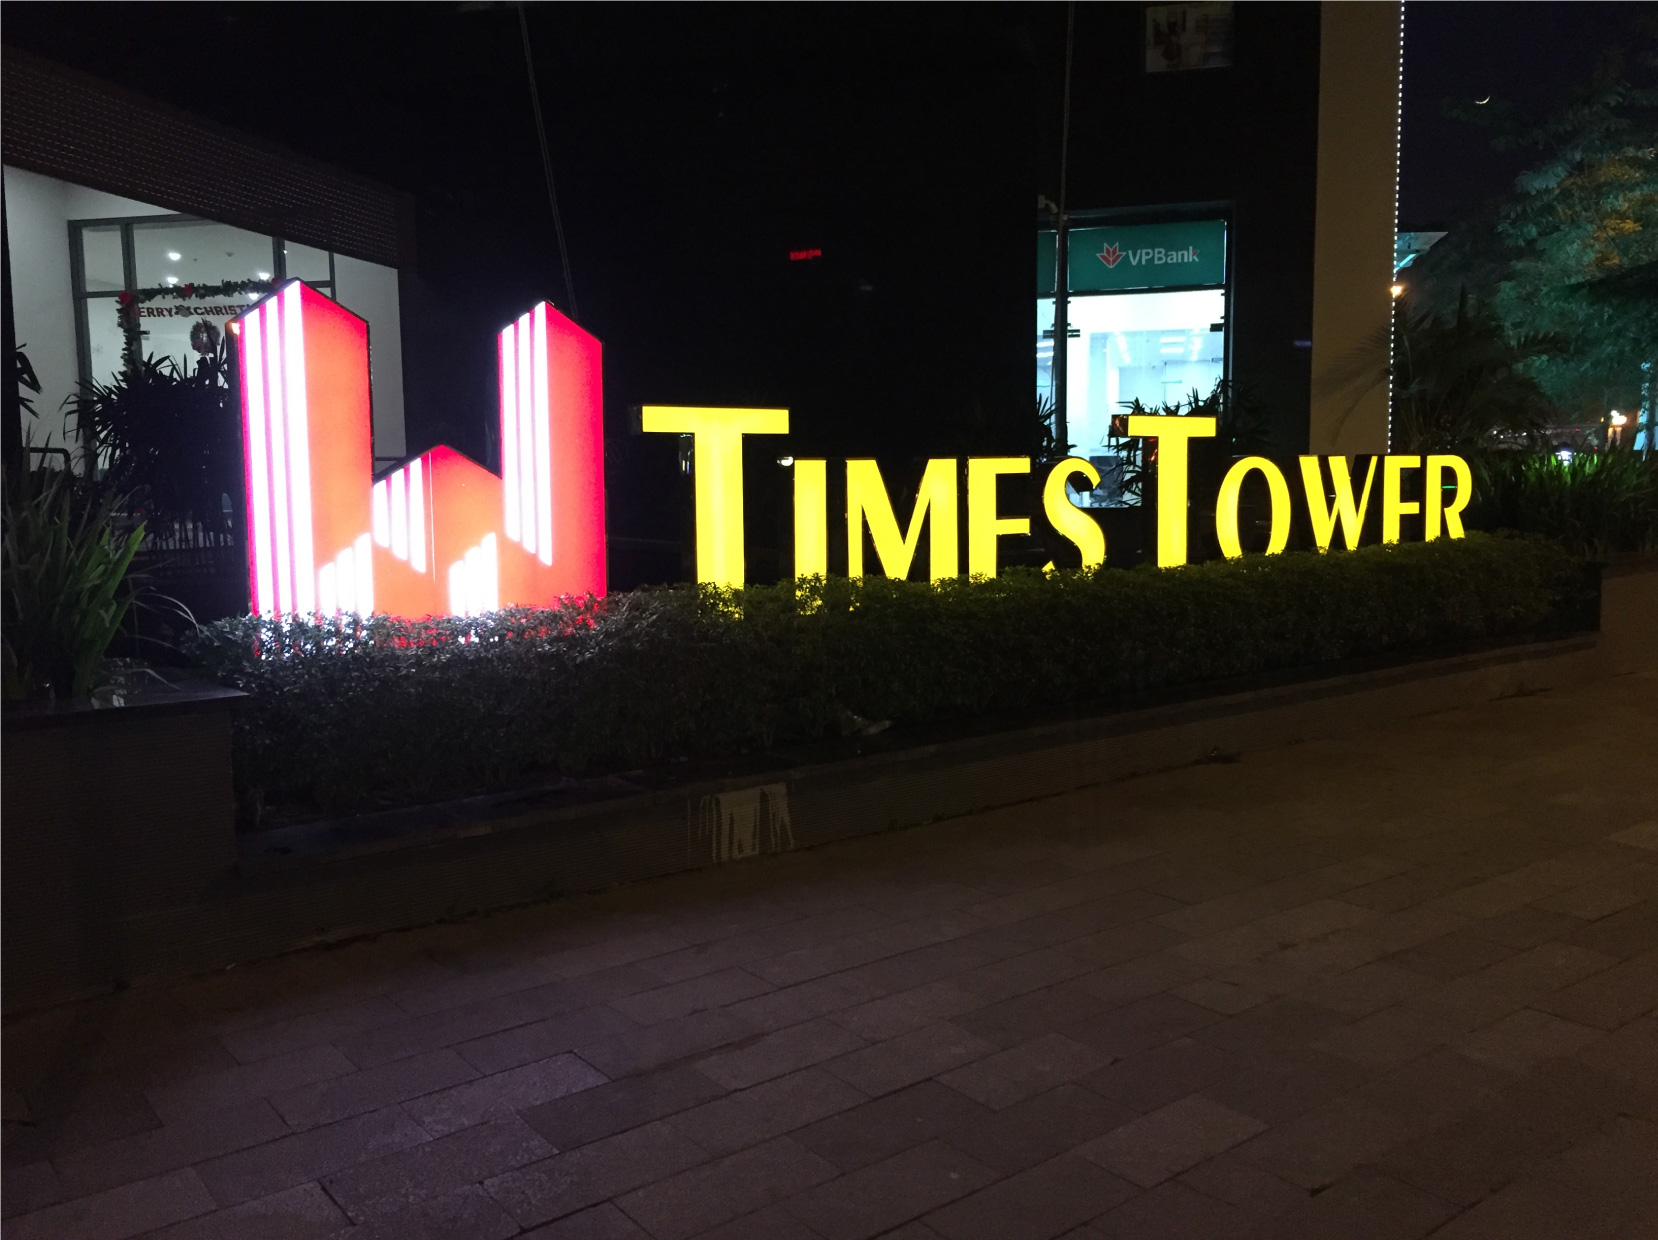 Bien-toa-nha-Times-Tower-35-Le-Van-Luong.jpg (456 KB)